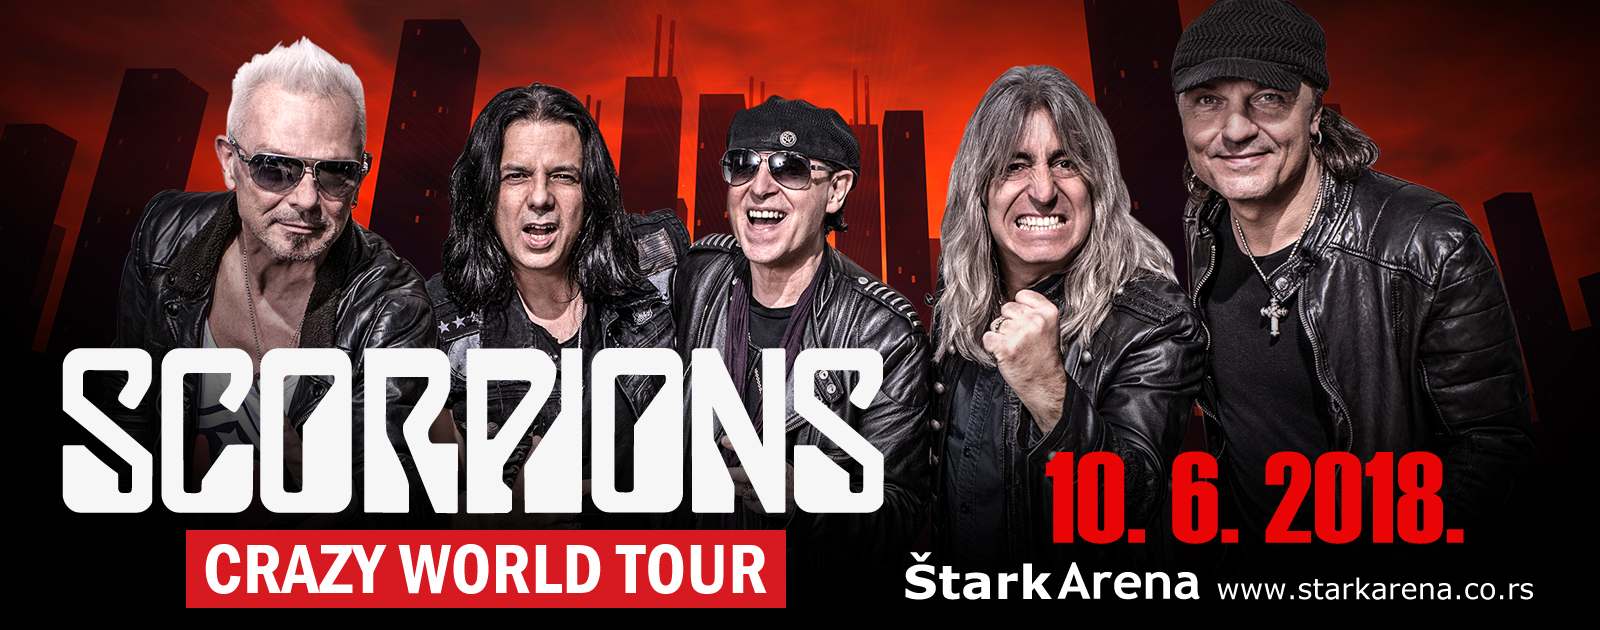 [:en]Scorpions 10.06.2018.Arena